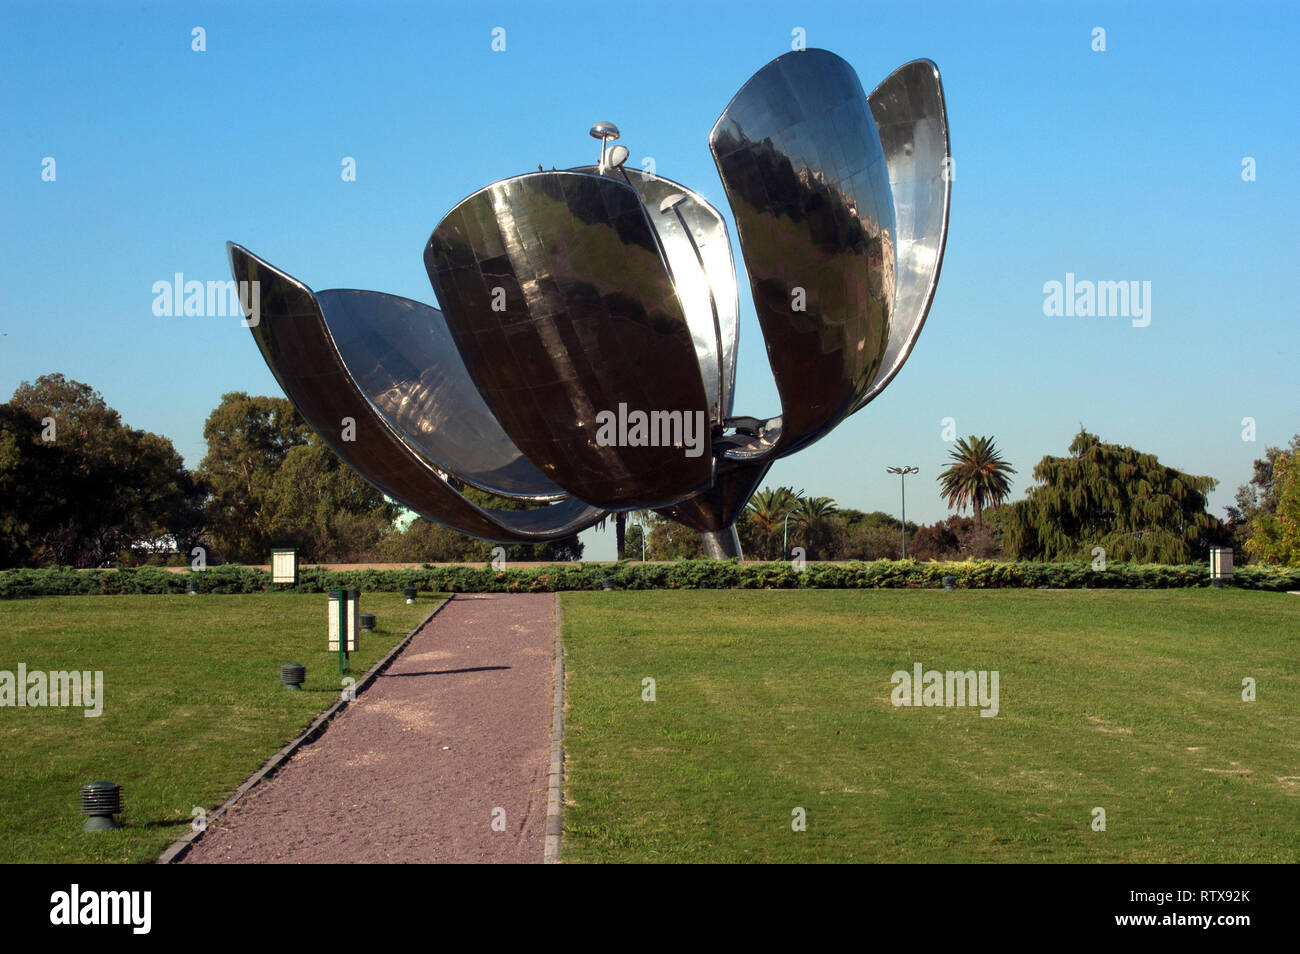 'Floralis generica', a steel flower sculpture by Eduardo Catalano located in Plaza de Las Naciones Unidas, Buenos Aires, Argentina Stock Photo